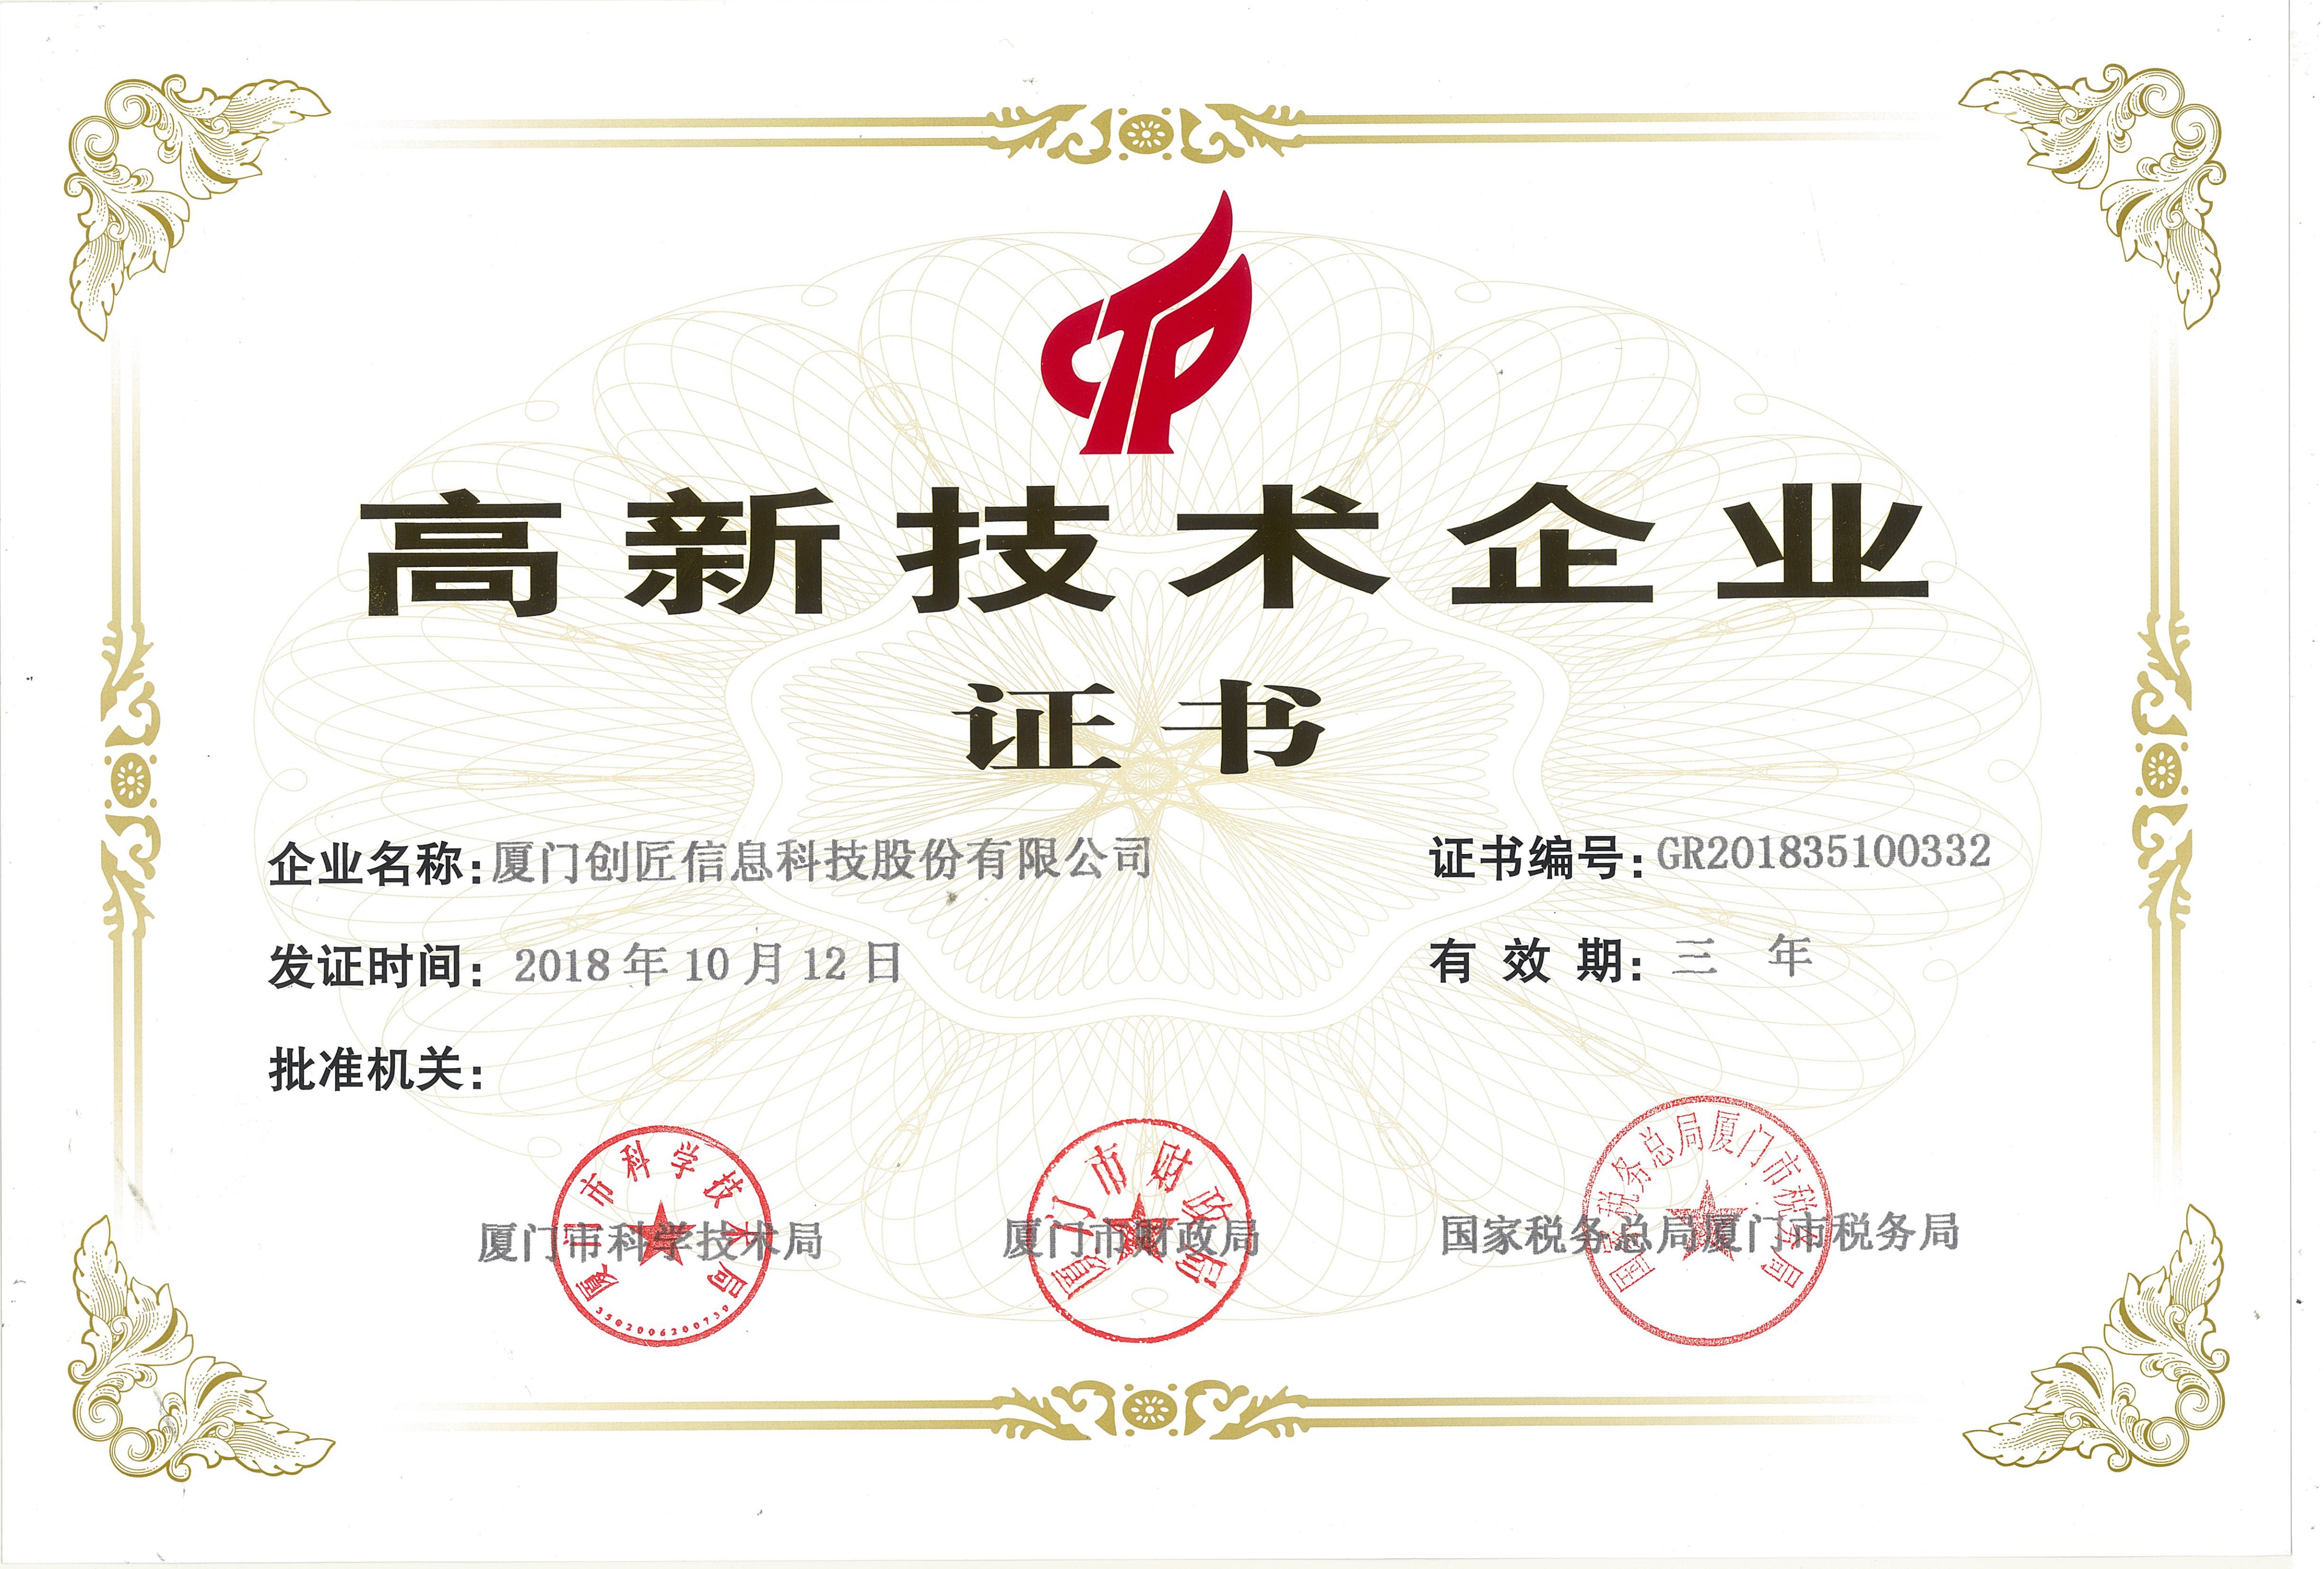 创客匠人荣获国家高新技术企业认证